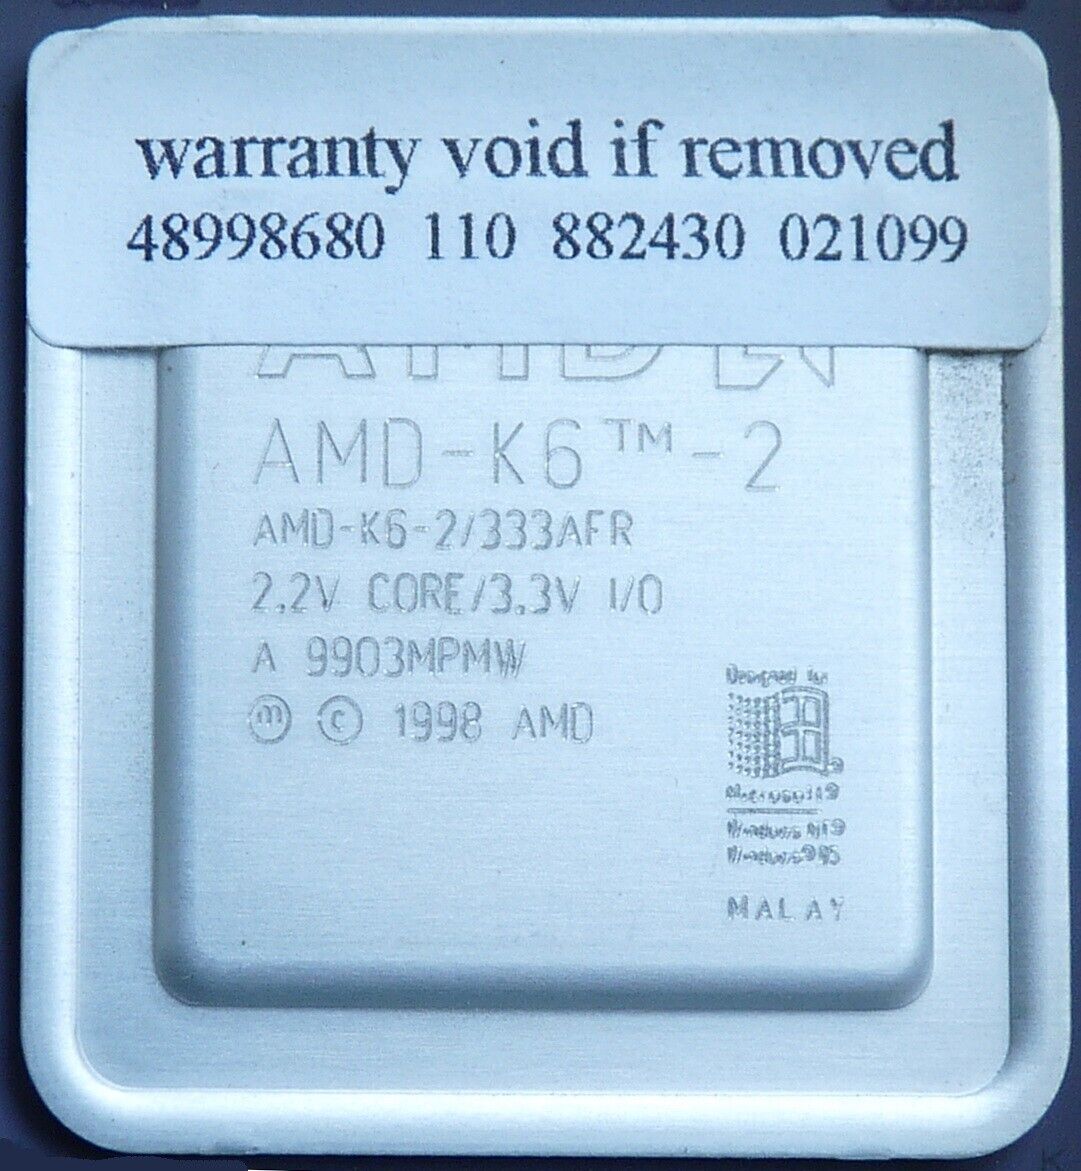 Vintage AMD-K6-2/333AFR-66 CPU Processor